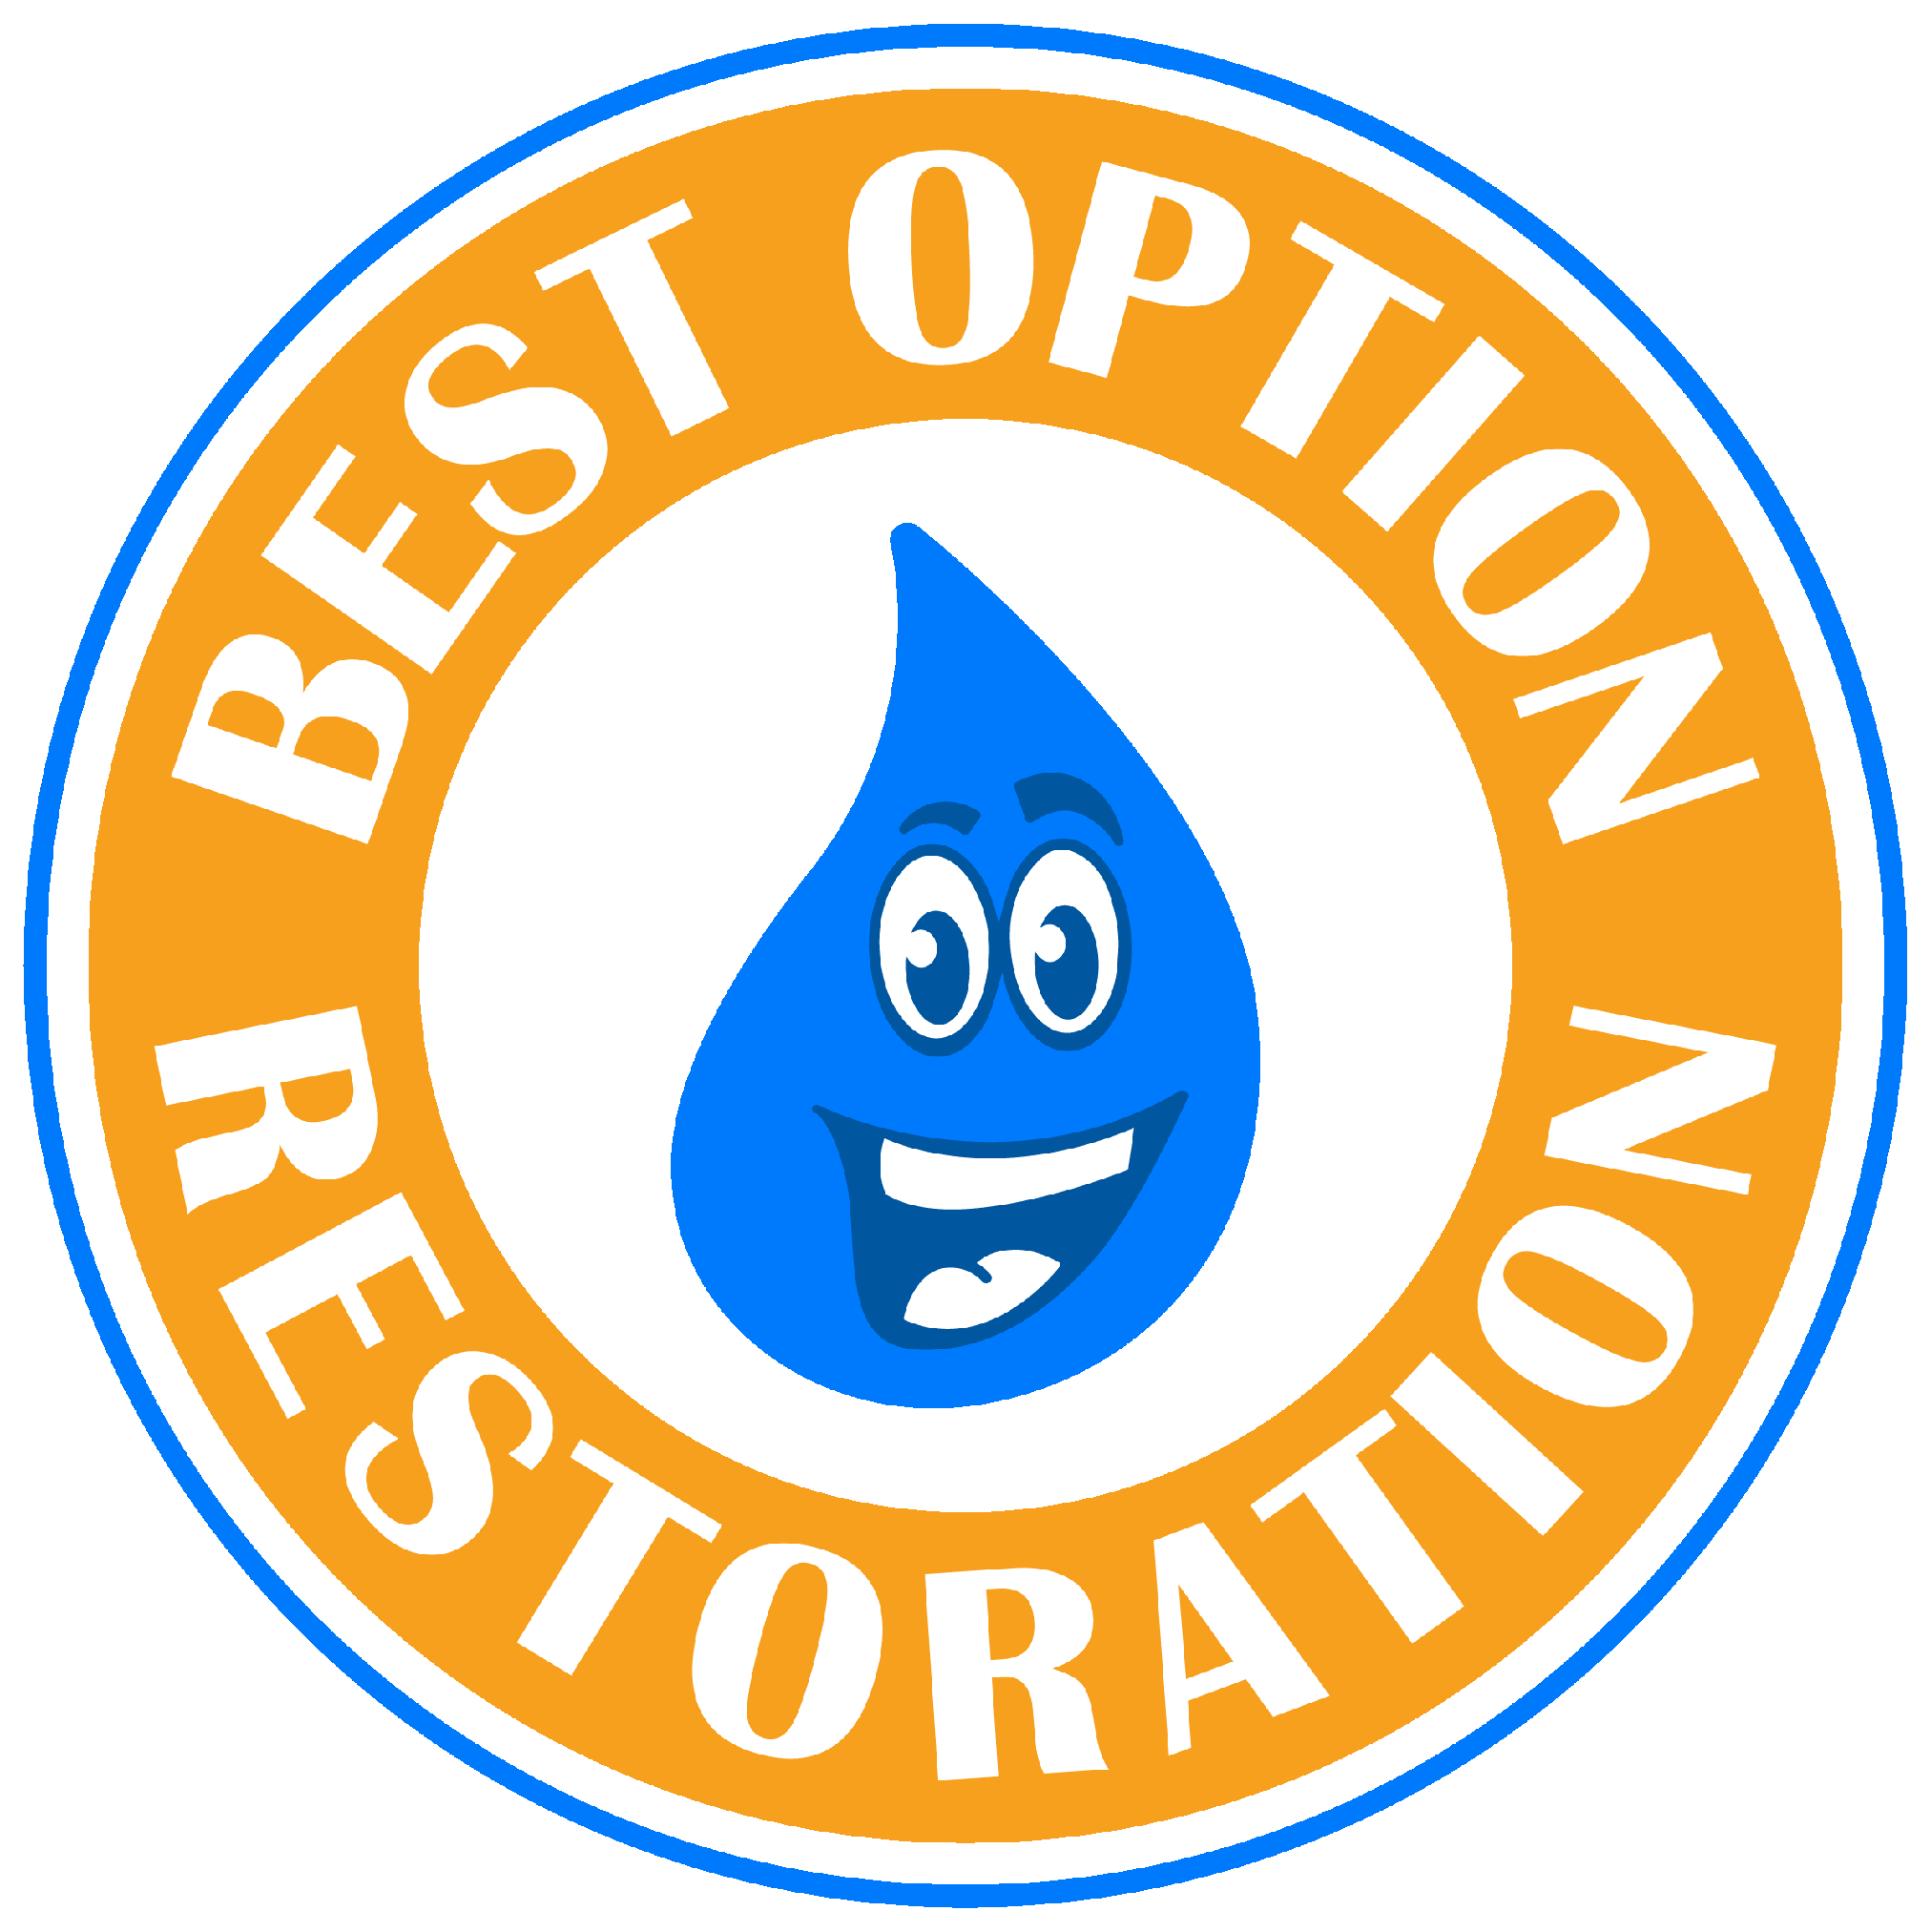 Disaster Restoration Company, Water Damage Repair Service in Greater Cincinnati